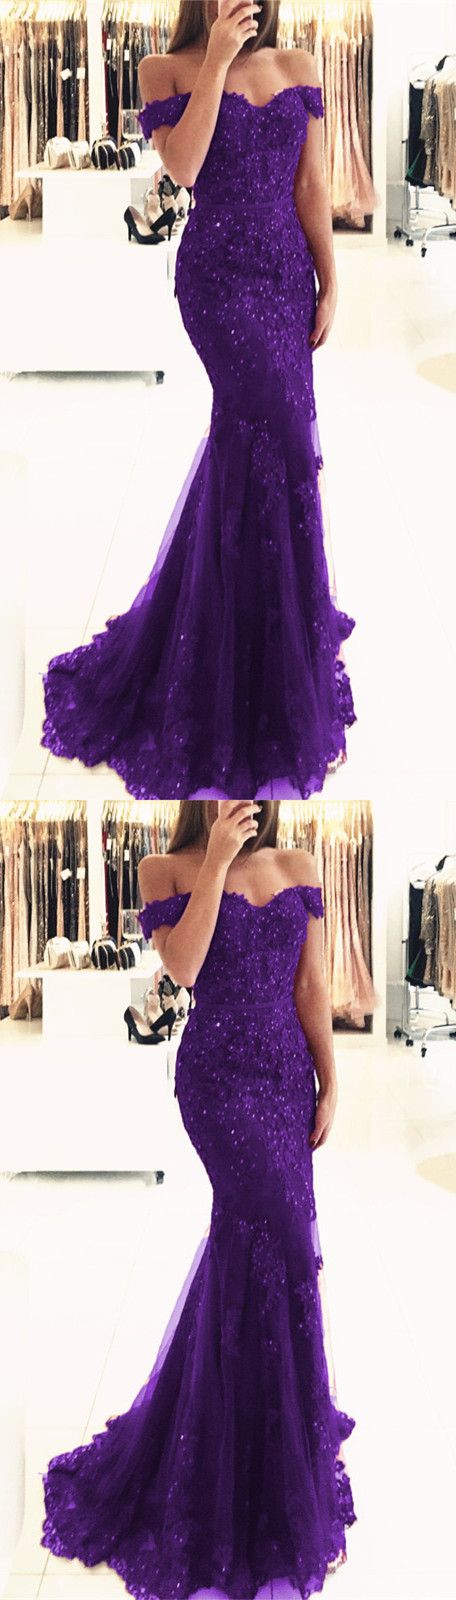 purple debs dress